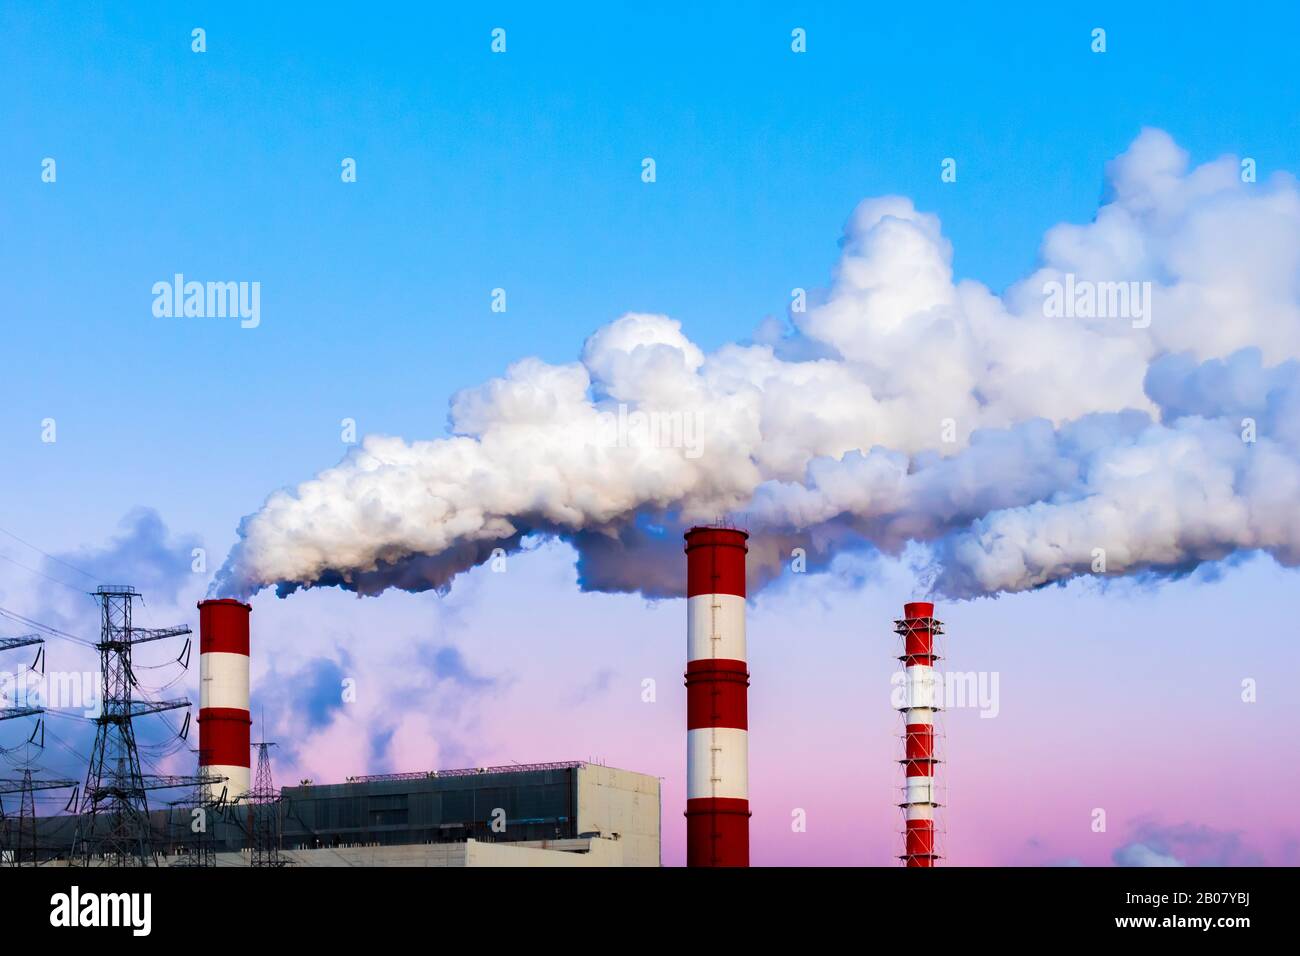 Les cheminées d'usine polluent l'air, la fumée épaisse sale, le ciel crépuscule du soir. Beau paysage industriel, pollution de l'environnement, air empoisonné Banque D'Images